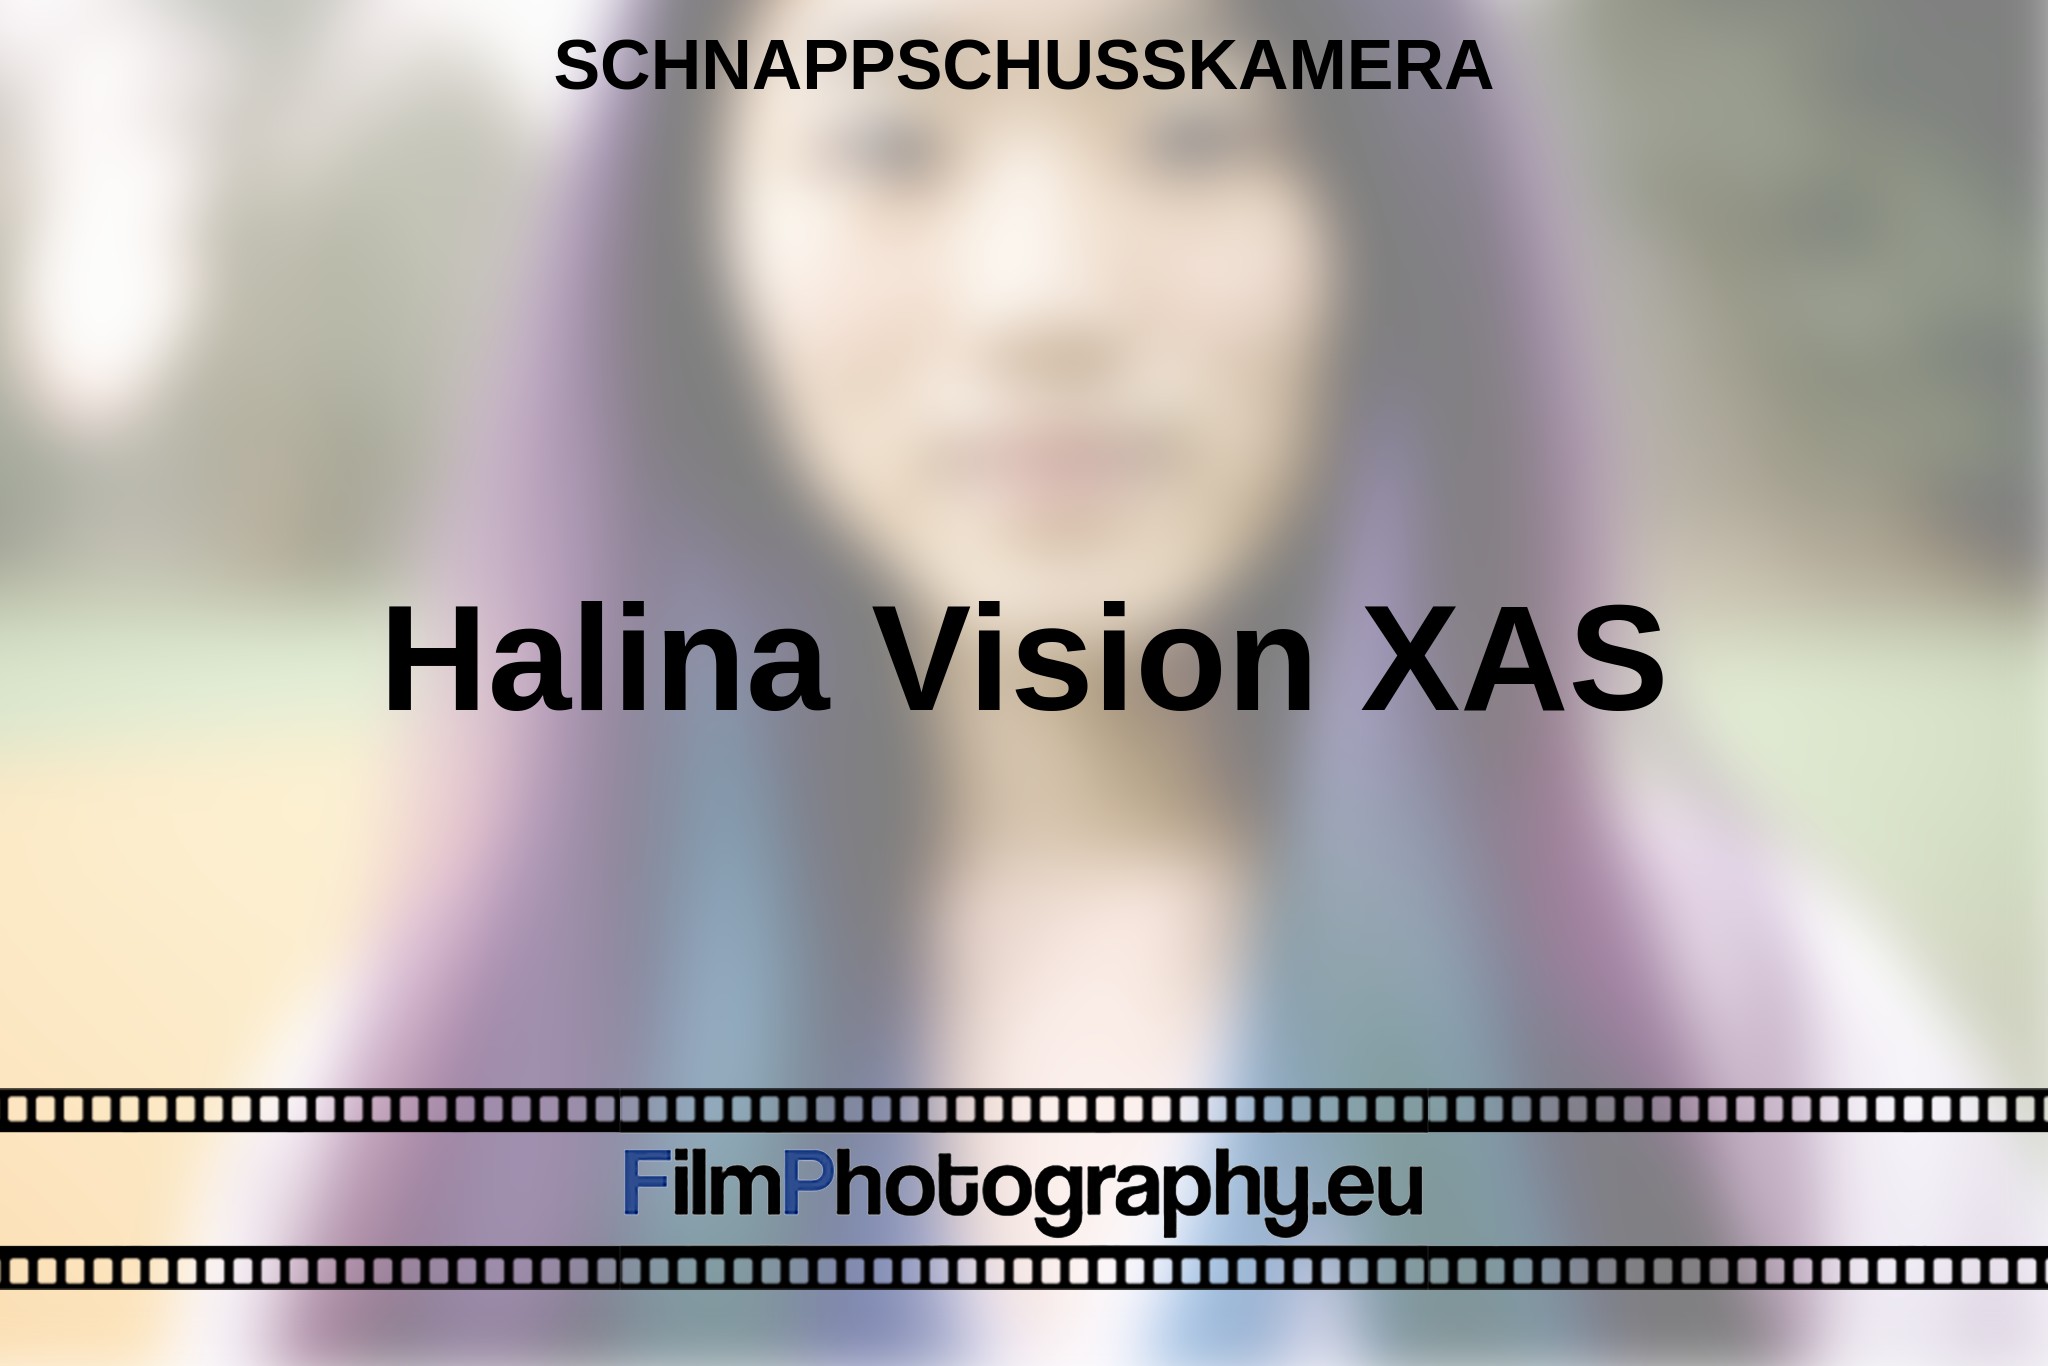 halina-vision-xas-schnappschusskamera-bnv.jpg